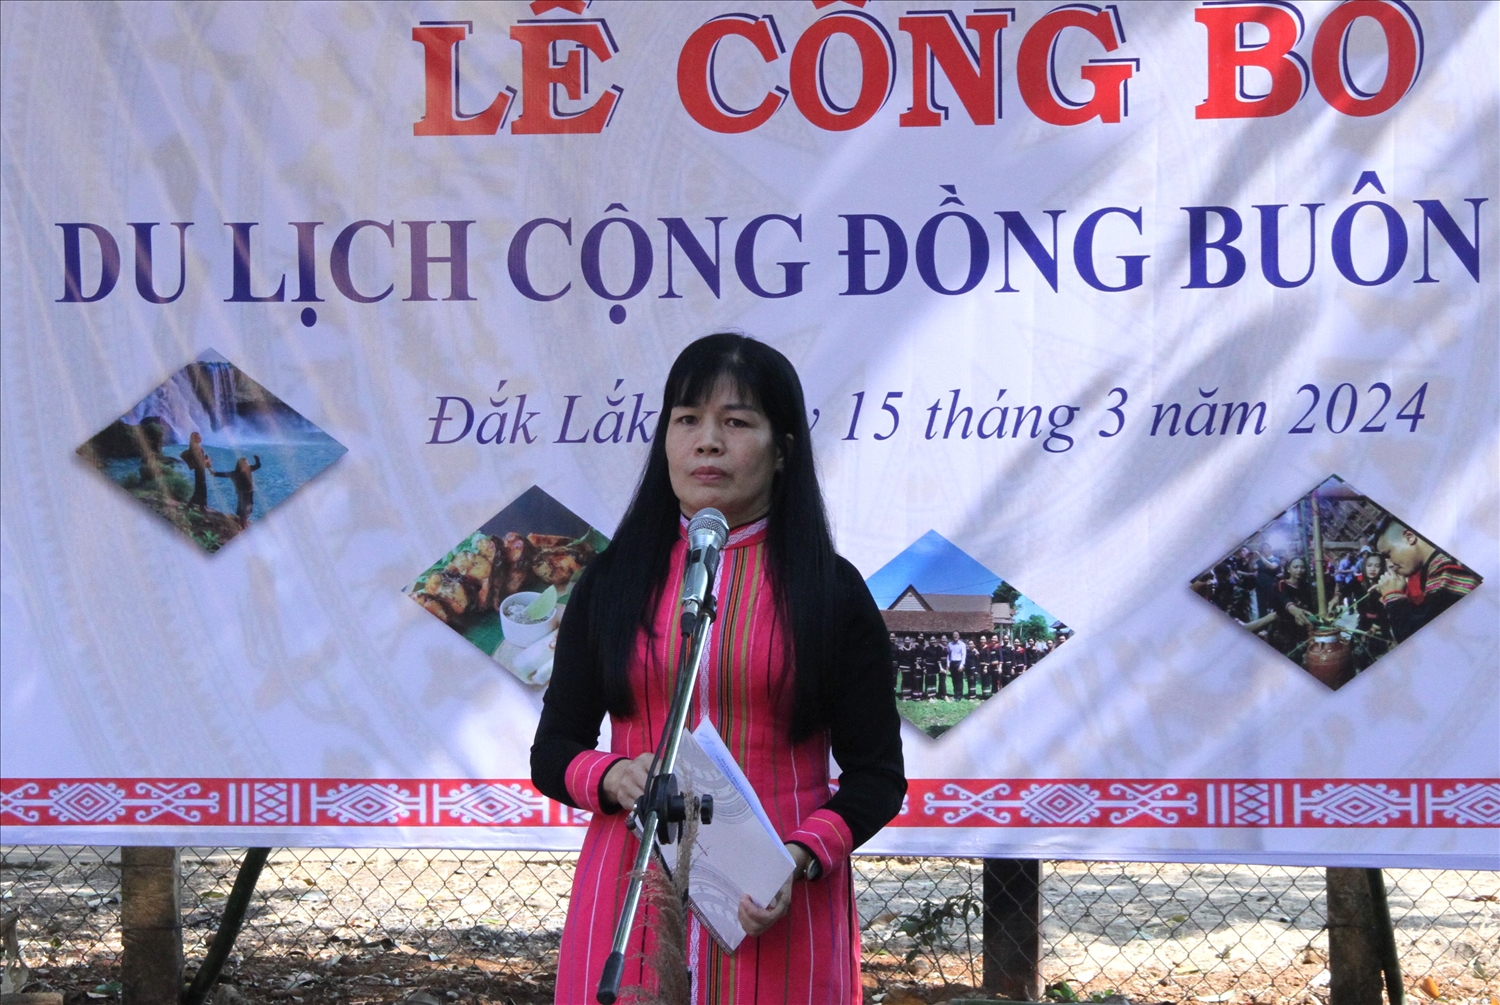 Phó giám đốc Sở Văn hóa, Thể thao và Du lịch tỉnh Đắk Lắk Nguyễn Thụy Phương Hiếu phát biểu tại lễ công bố